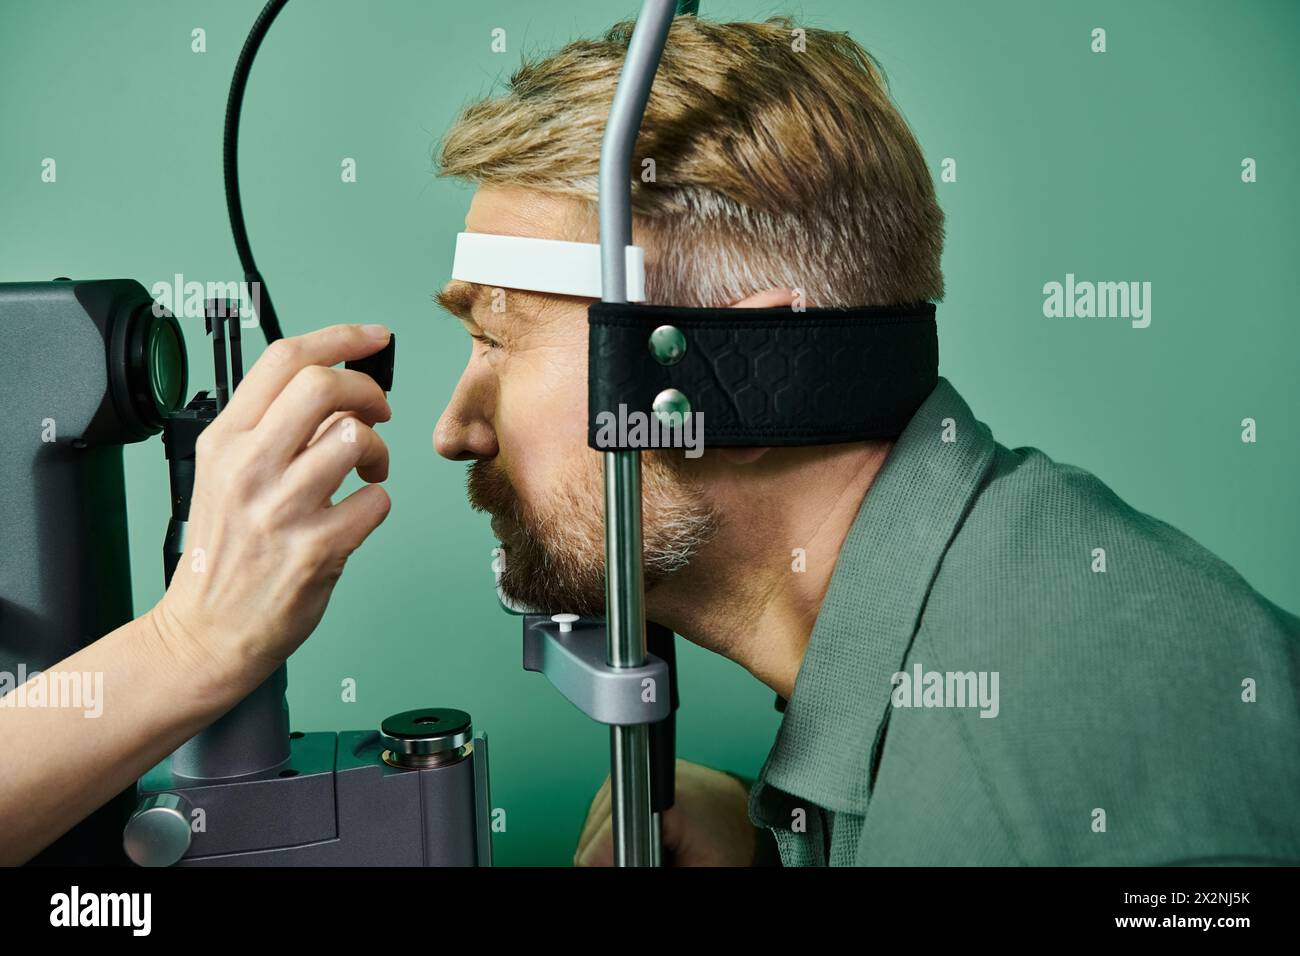 Ein spezialisierter Arzt untersucht die Augen des Mannes mittels eines Mikroskops in einer Arztpraxis zur Laser-Sehkorrektur. Stockfoto